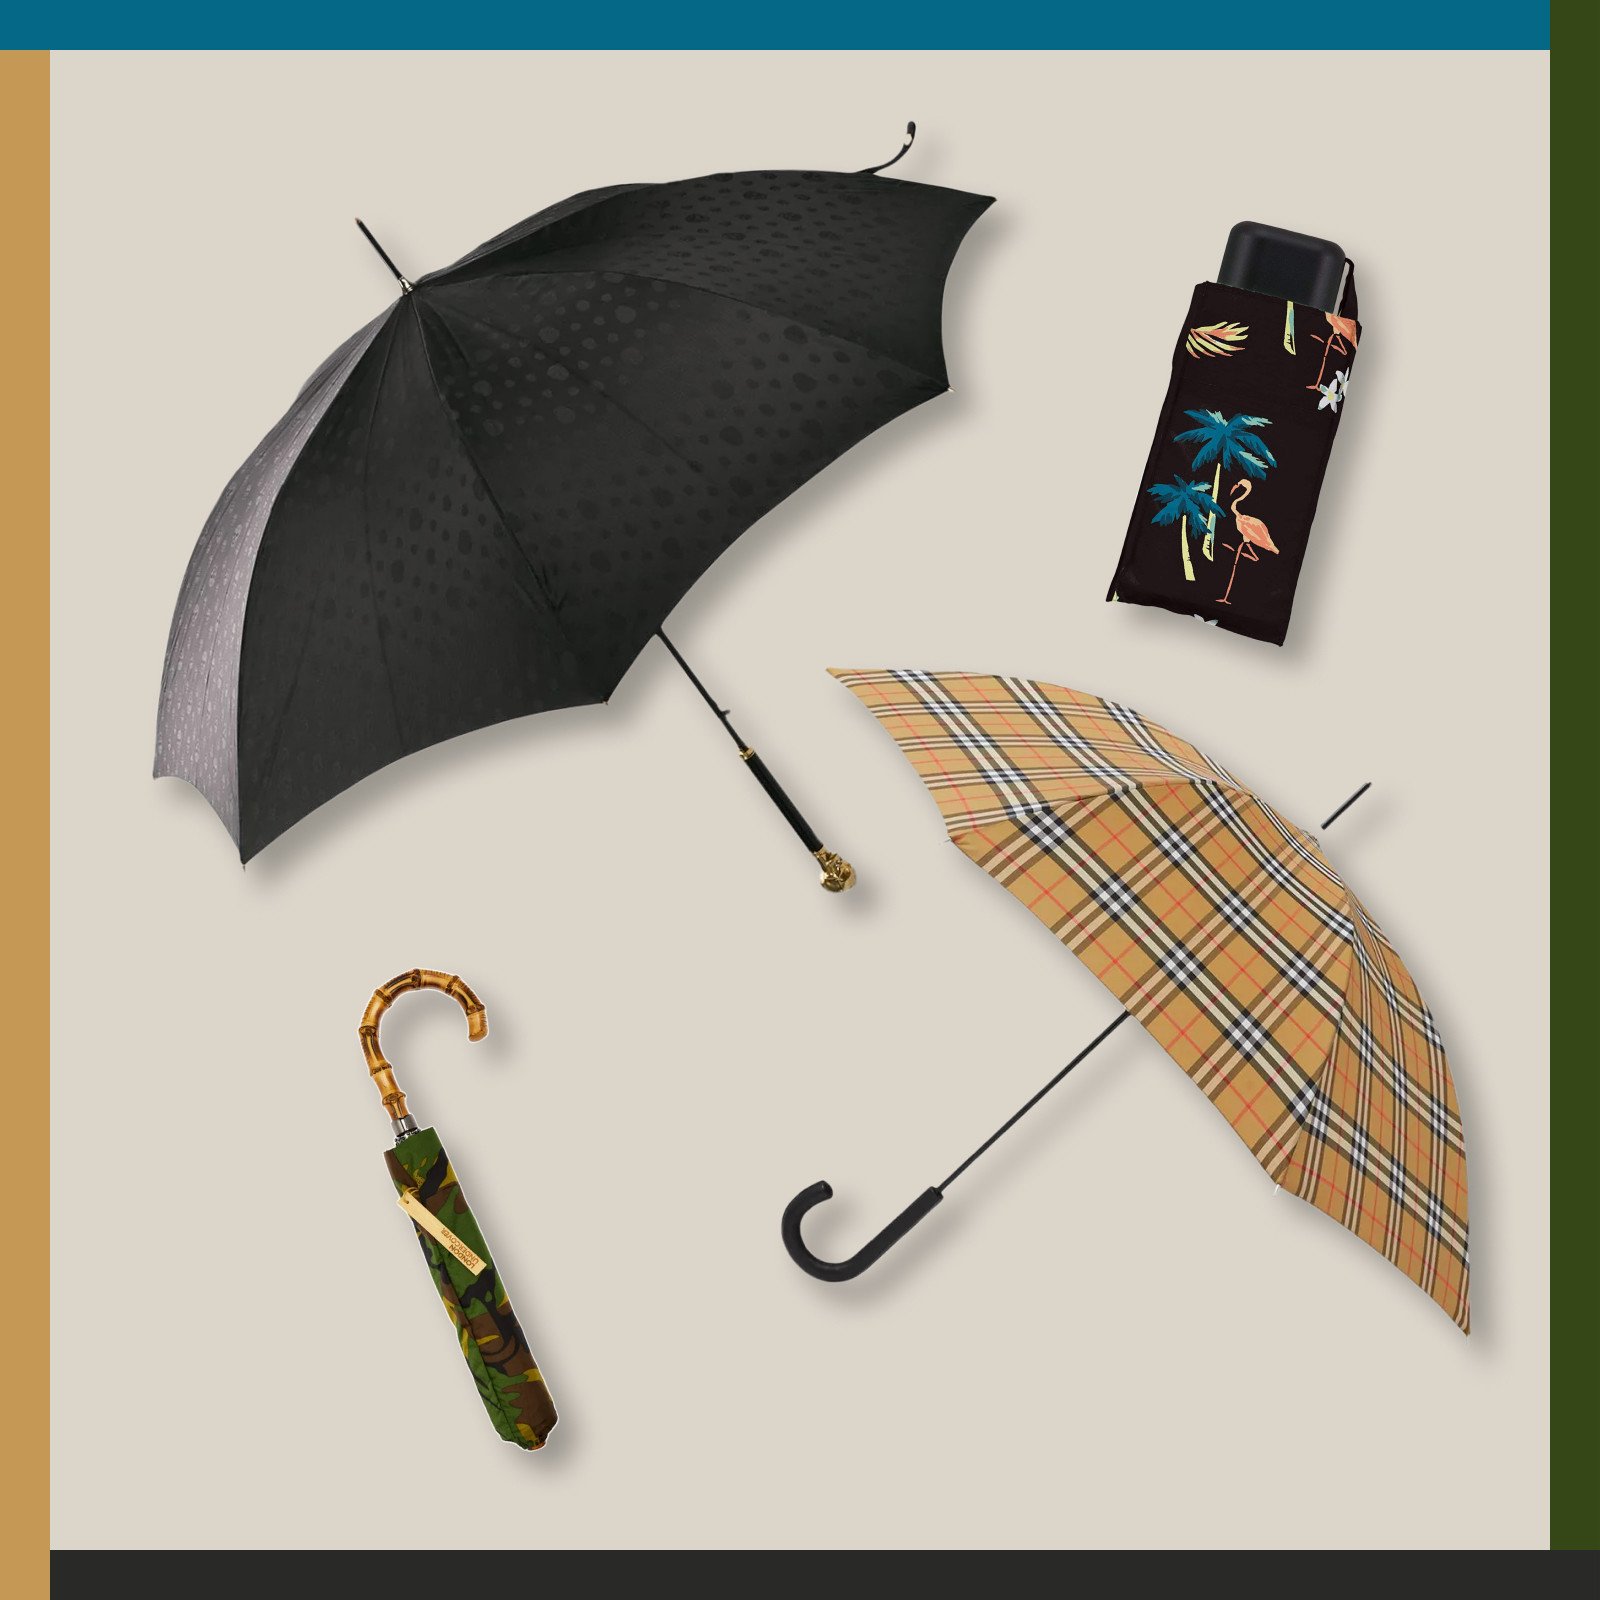 ビニール傘以外に持っておきたい デザインにこだわったおすすめ雨傘11選